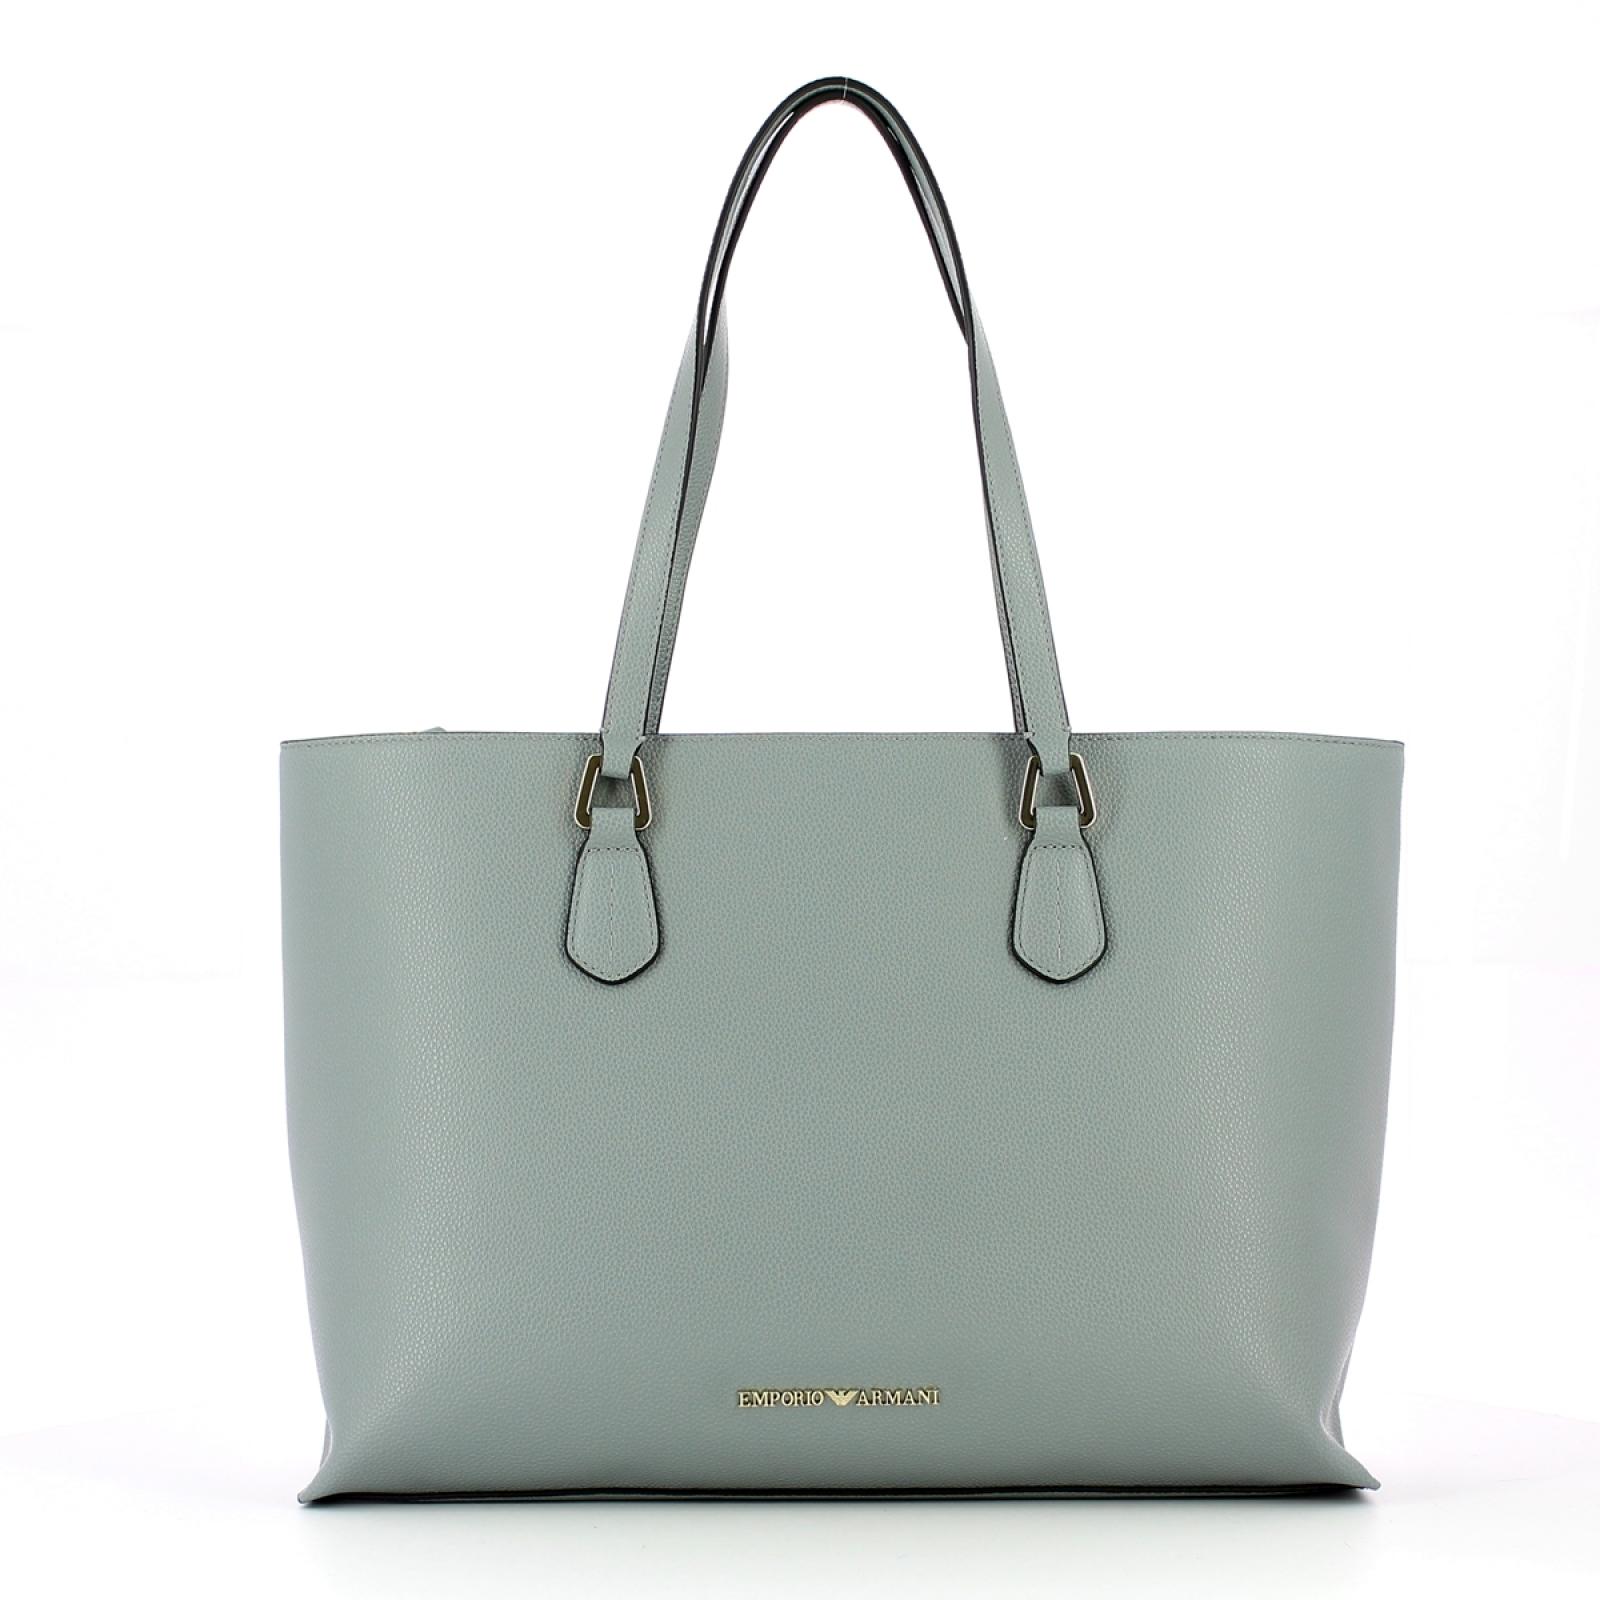 Emporio Armani Shopping Bag - 1